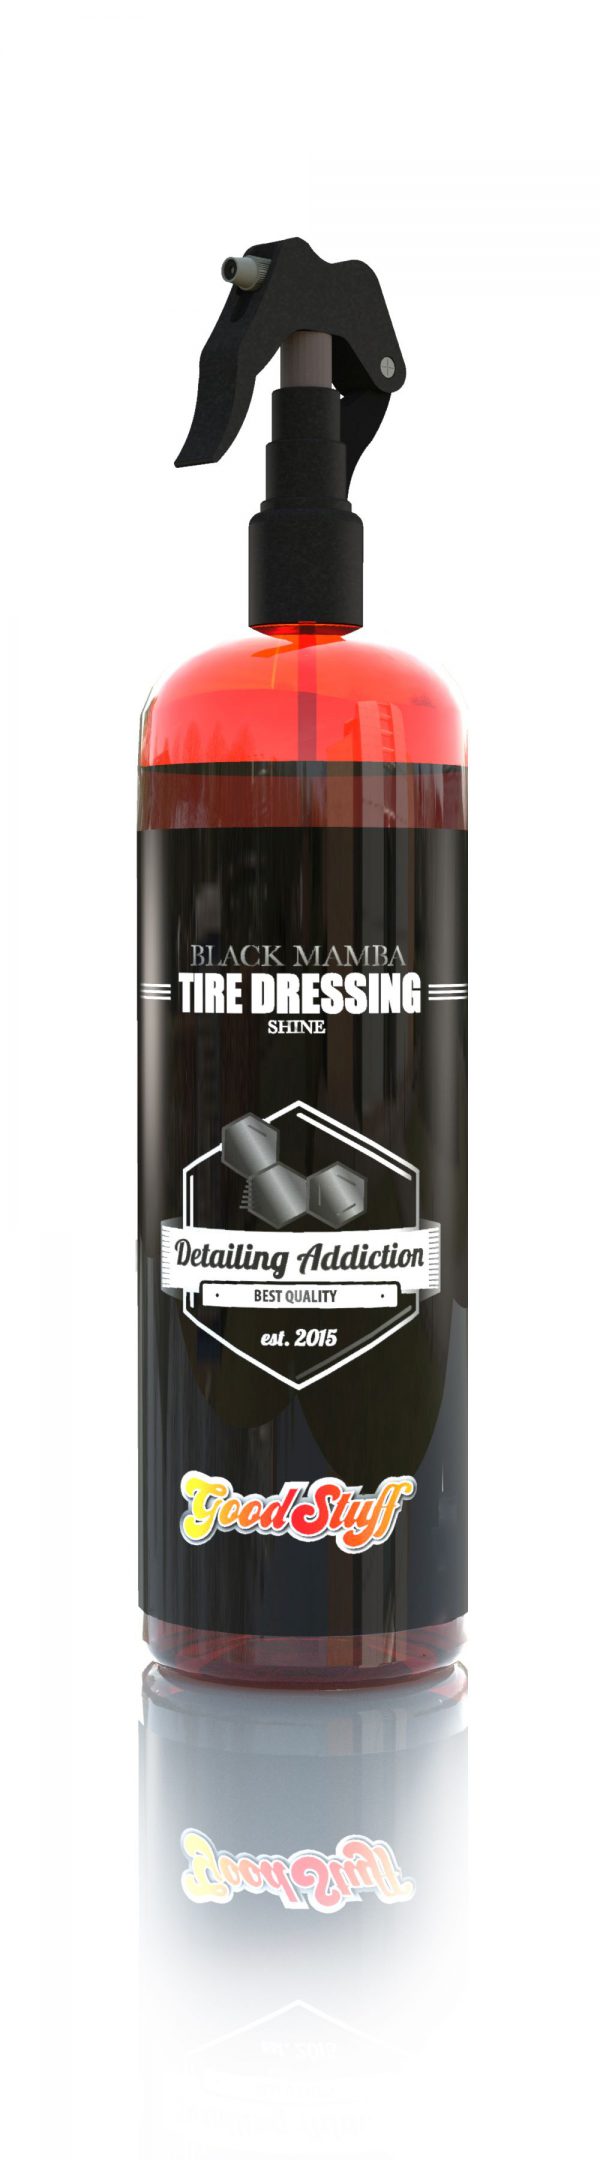 Good Stuff Black Mamba Shine Tire Dressing - nabłyszczający dressing do opon 500 ml